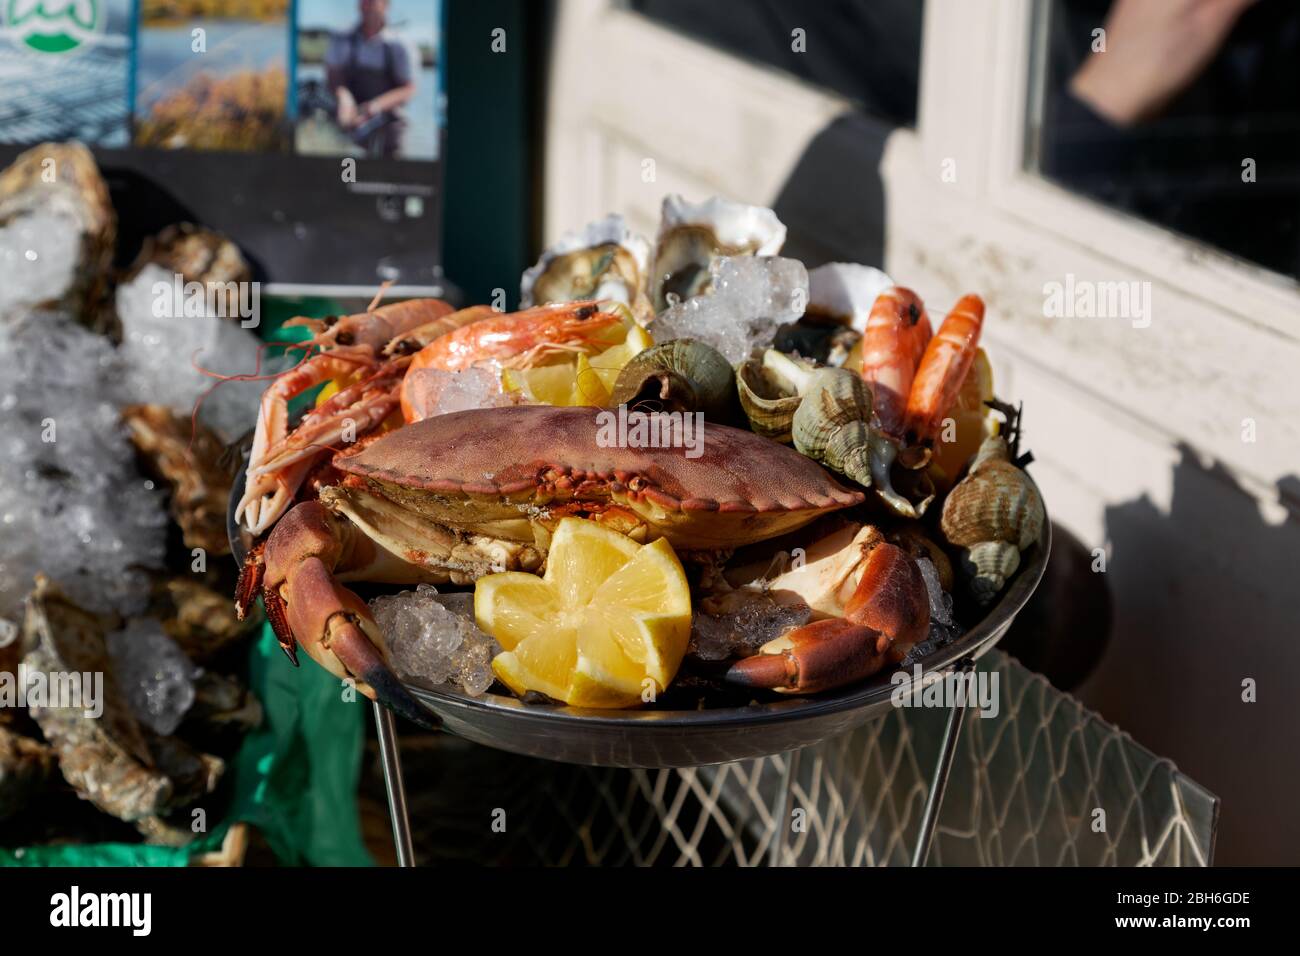 Seafood Platter on Ice, plateau de fruits de mer sur glace, Cafe Bar, Montmatre, Paris, France, featuring crab, whelks, prawns, crabe, bulot, crevette Stock Photo